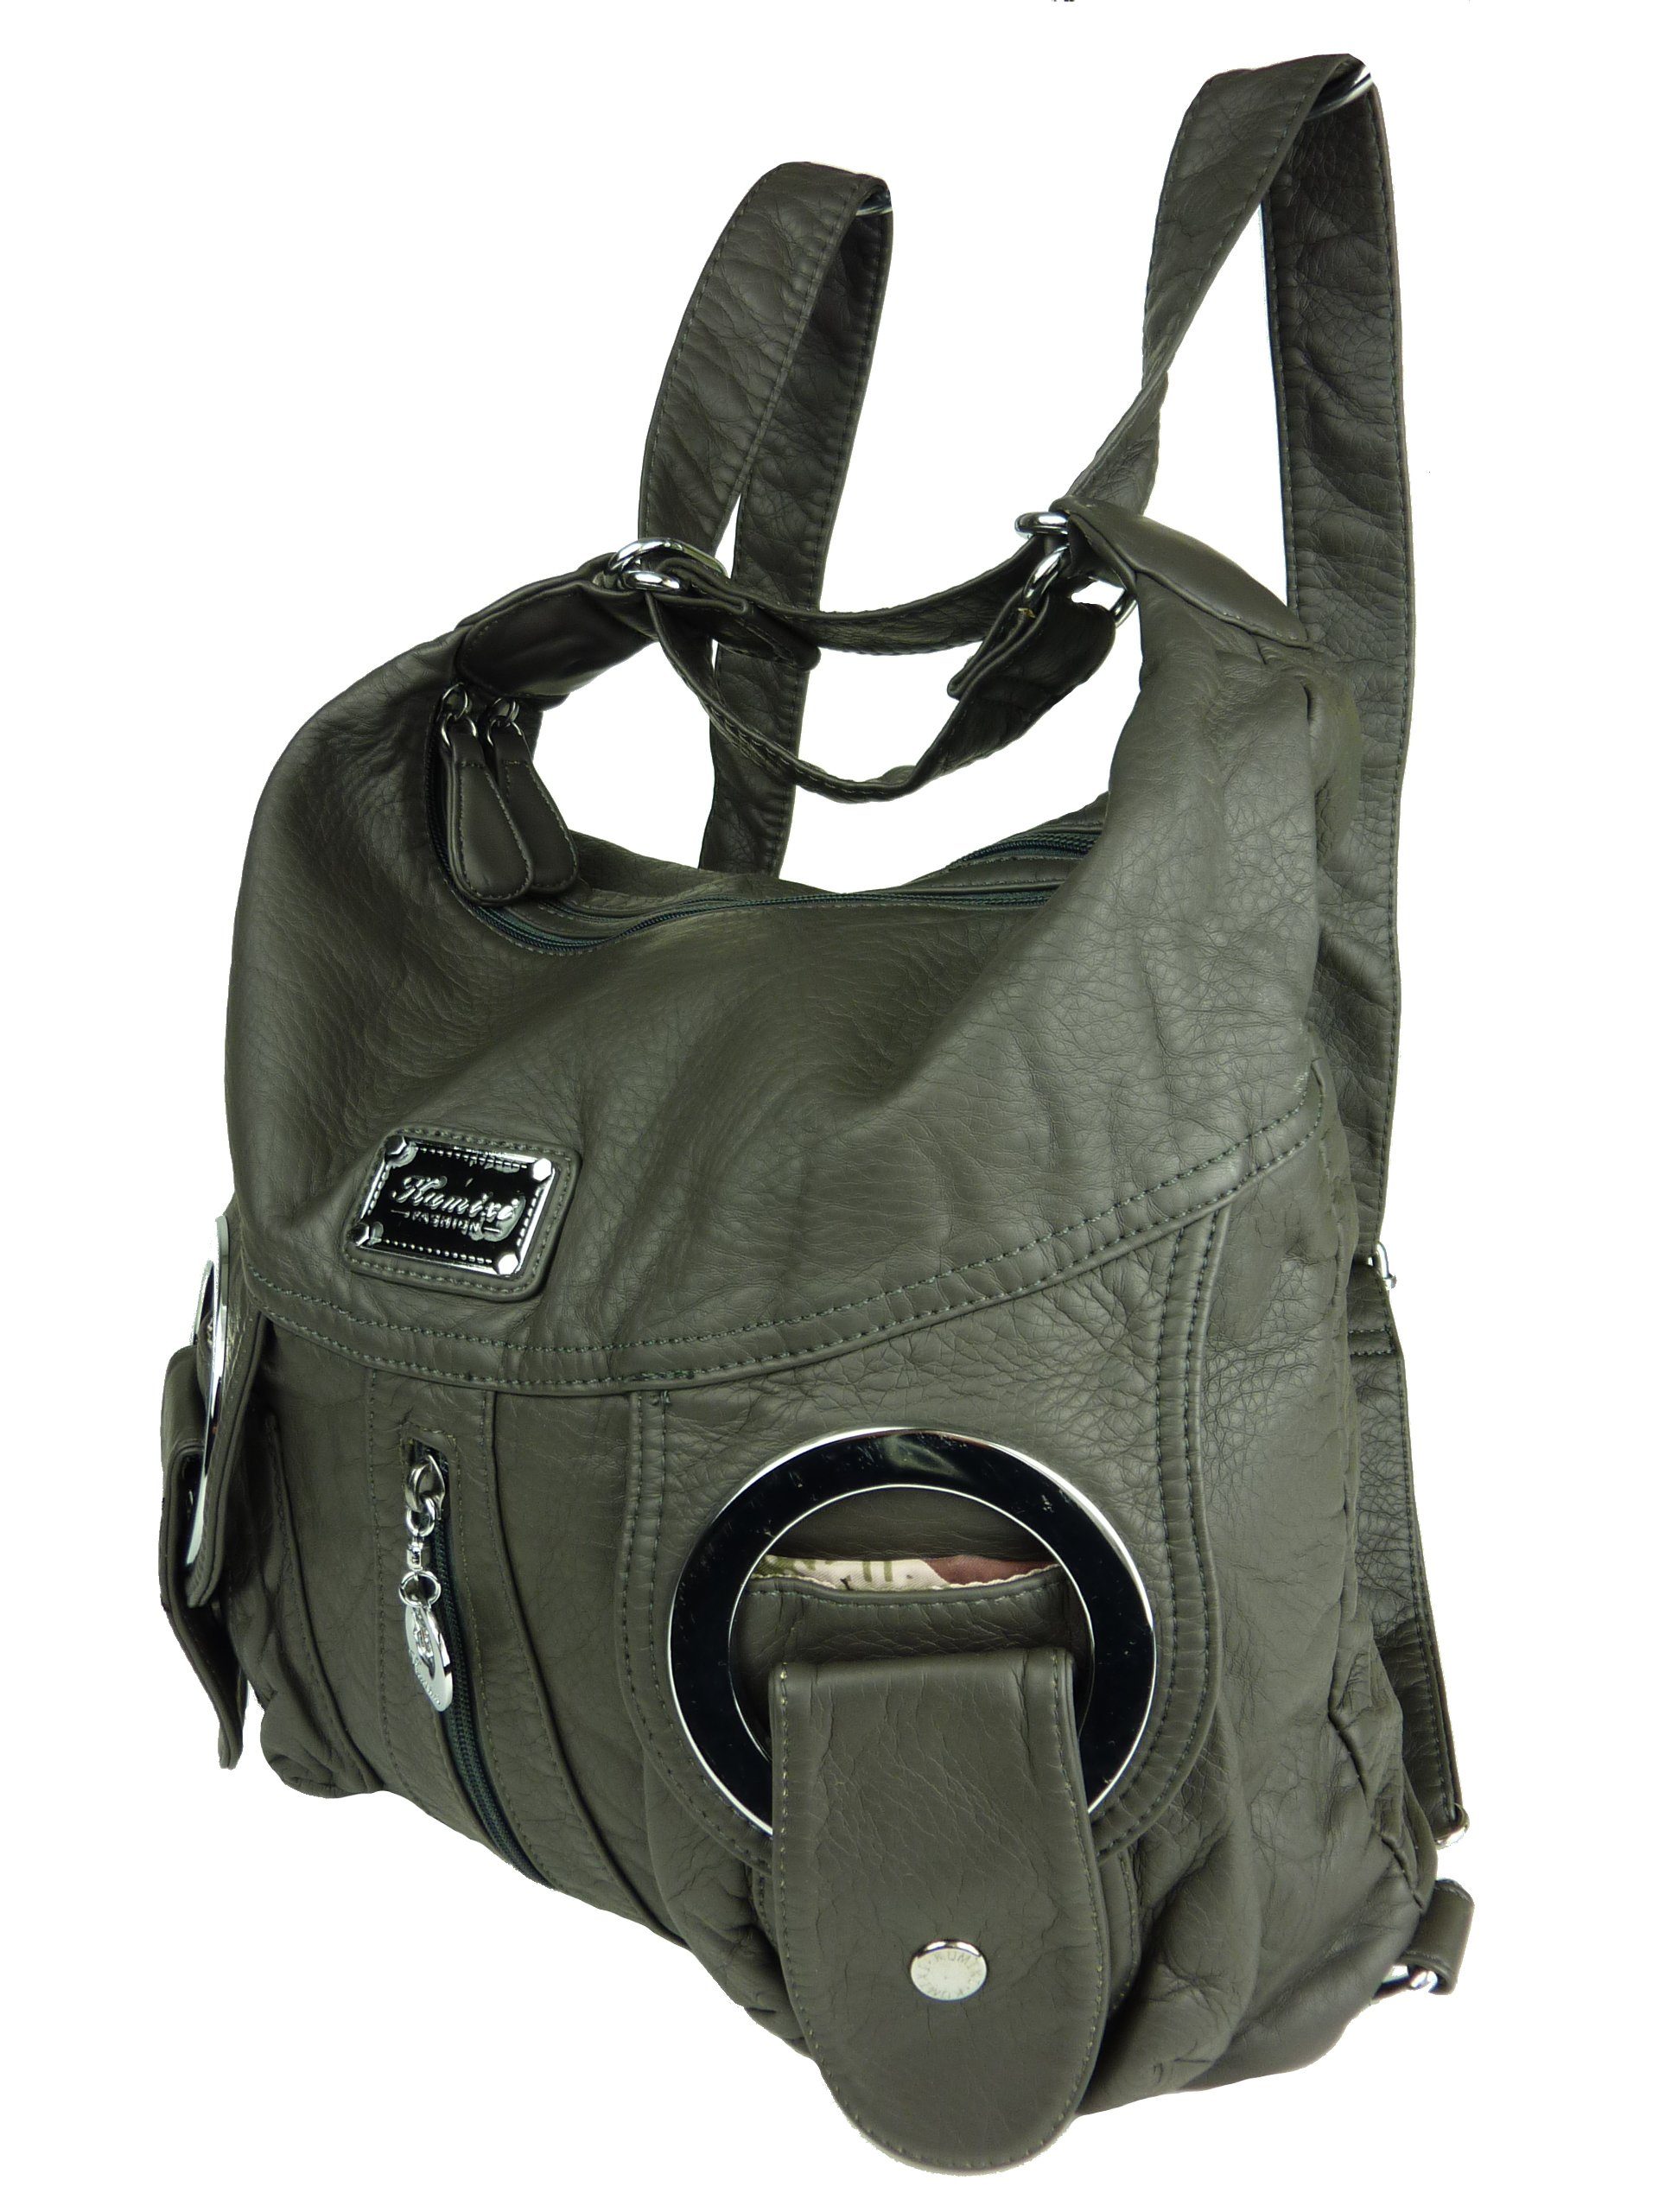 Taschen4life Schultertasche Rucksacktasche W6802 Multifunktionstasche, Tasche oder Rucksack, verstellbarer Schulterriemen, als Schultertasche oder Rucksack tragbar anthrazit